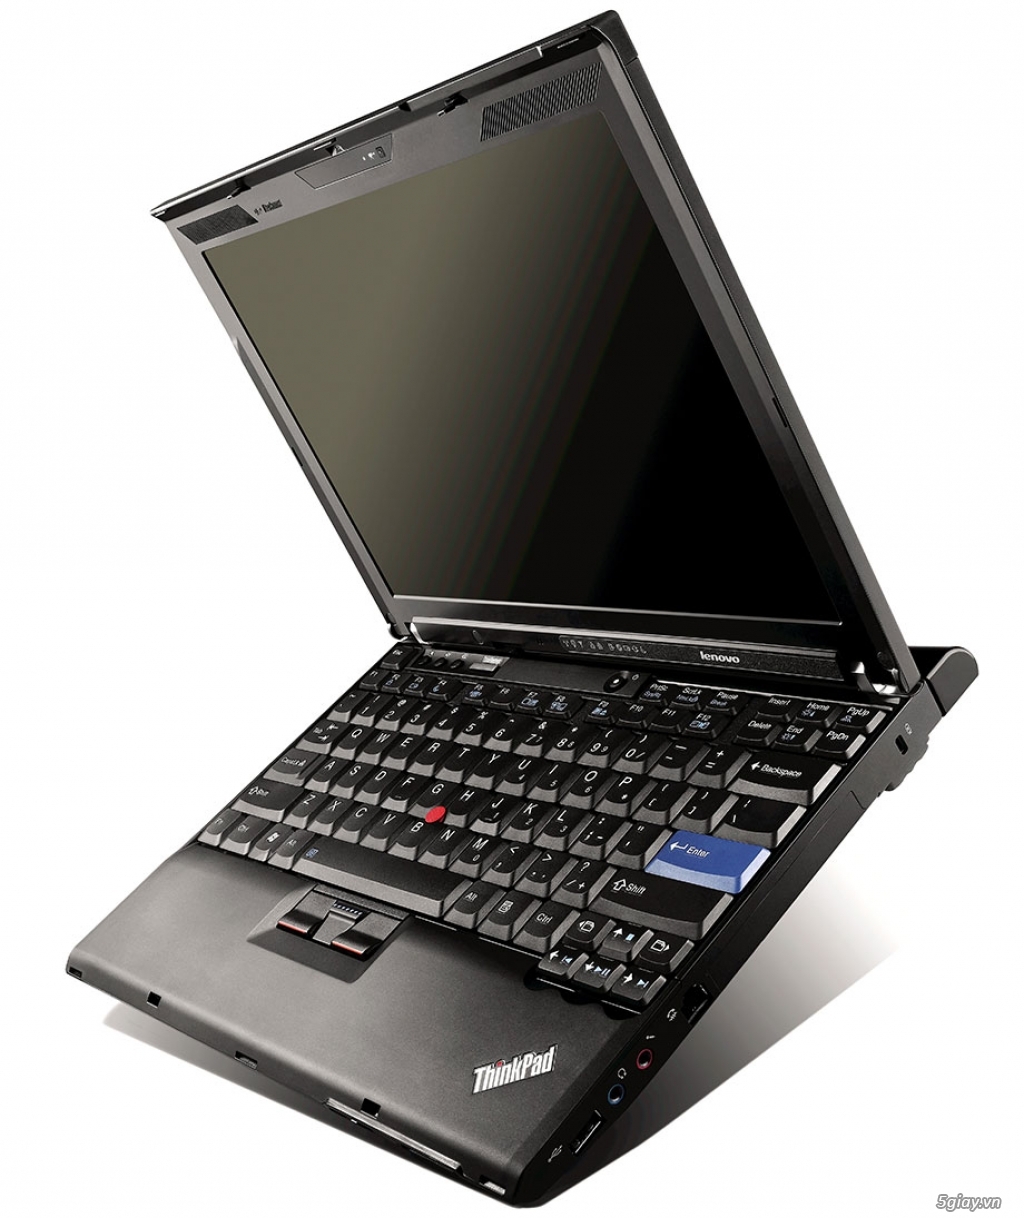 Thanh lí nhanh con Lenovo Thinkpad X200S nhẹ mỏng, còn mới